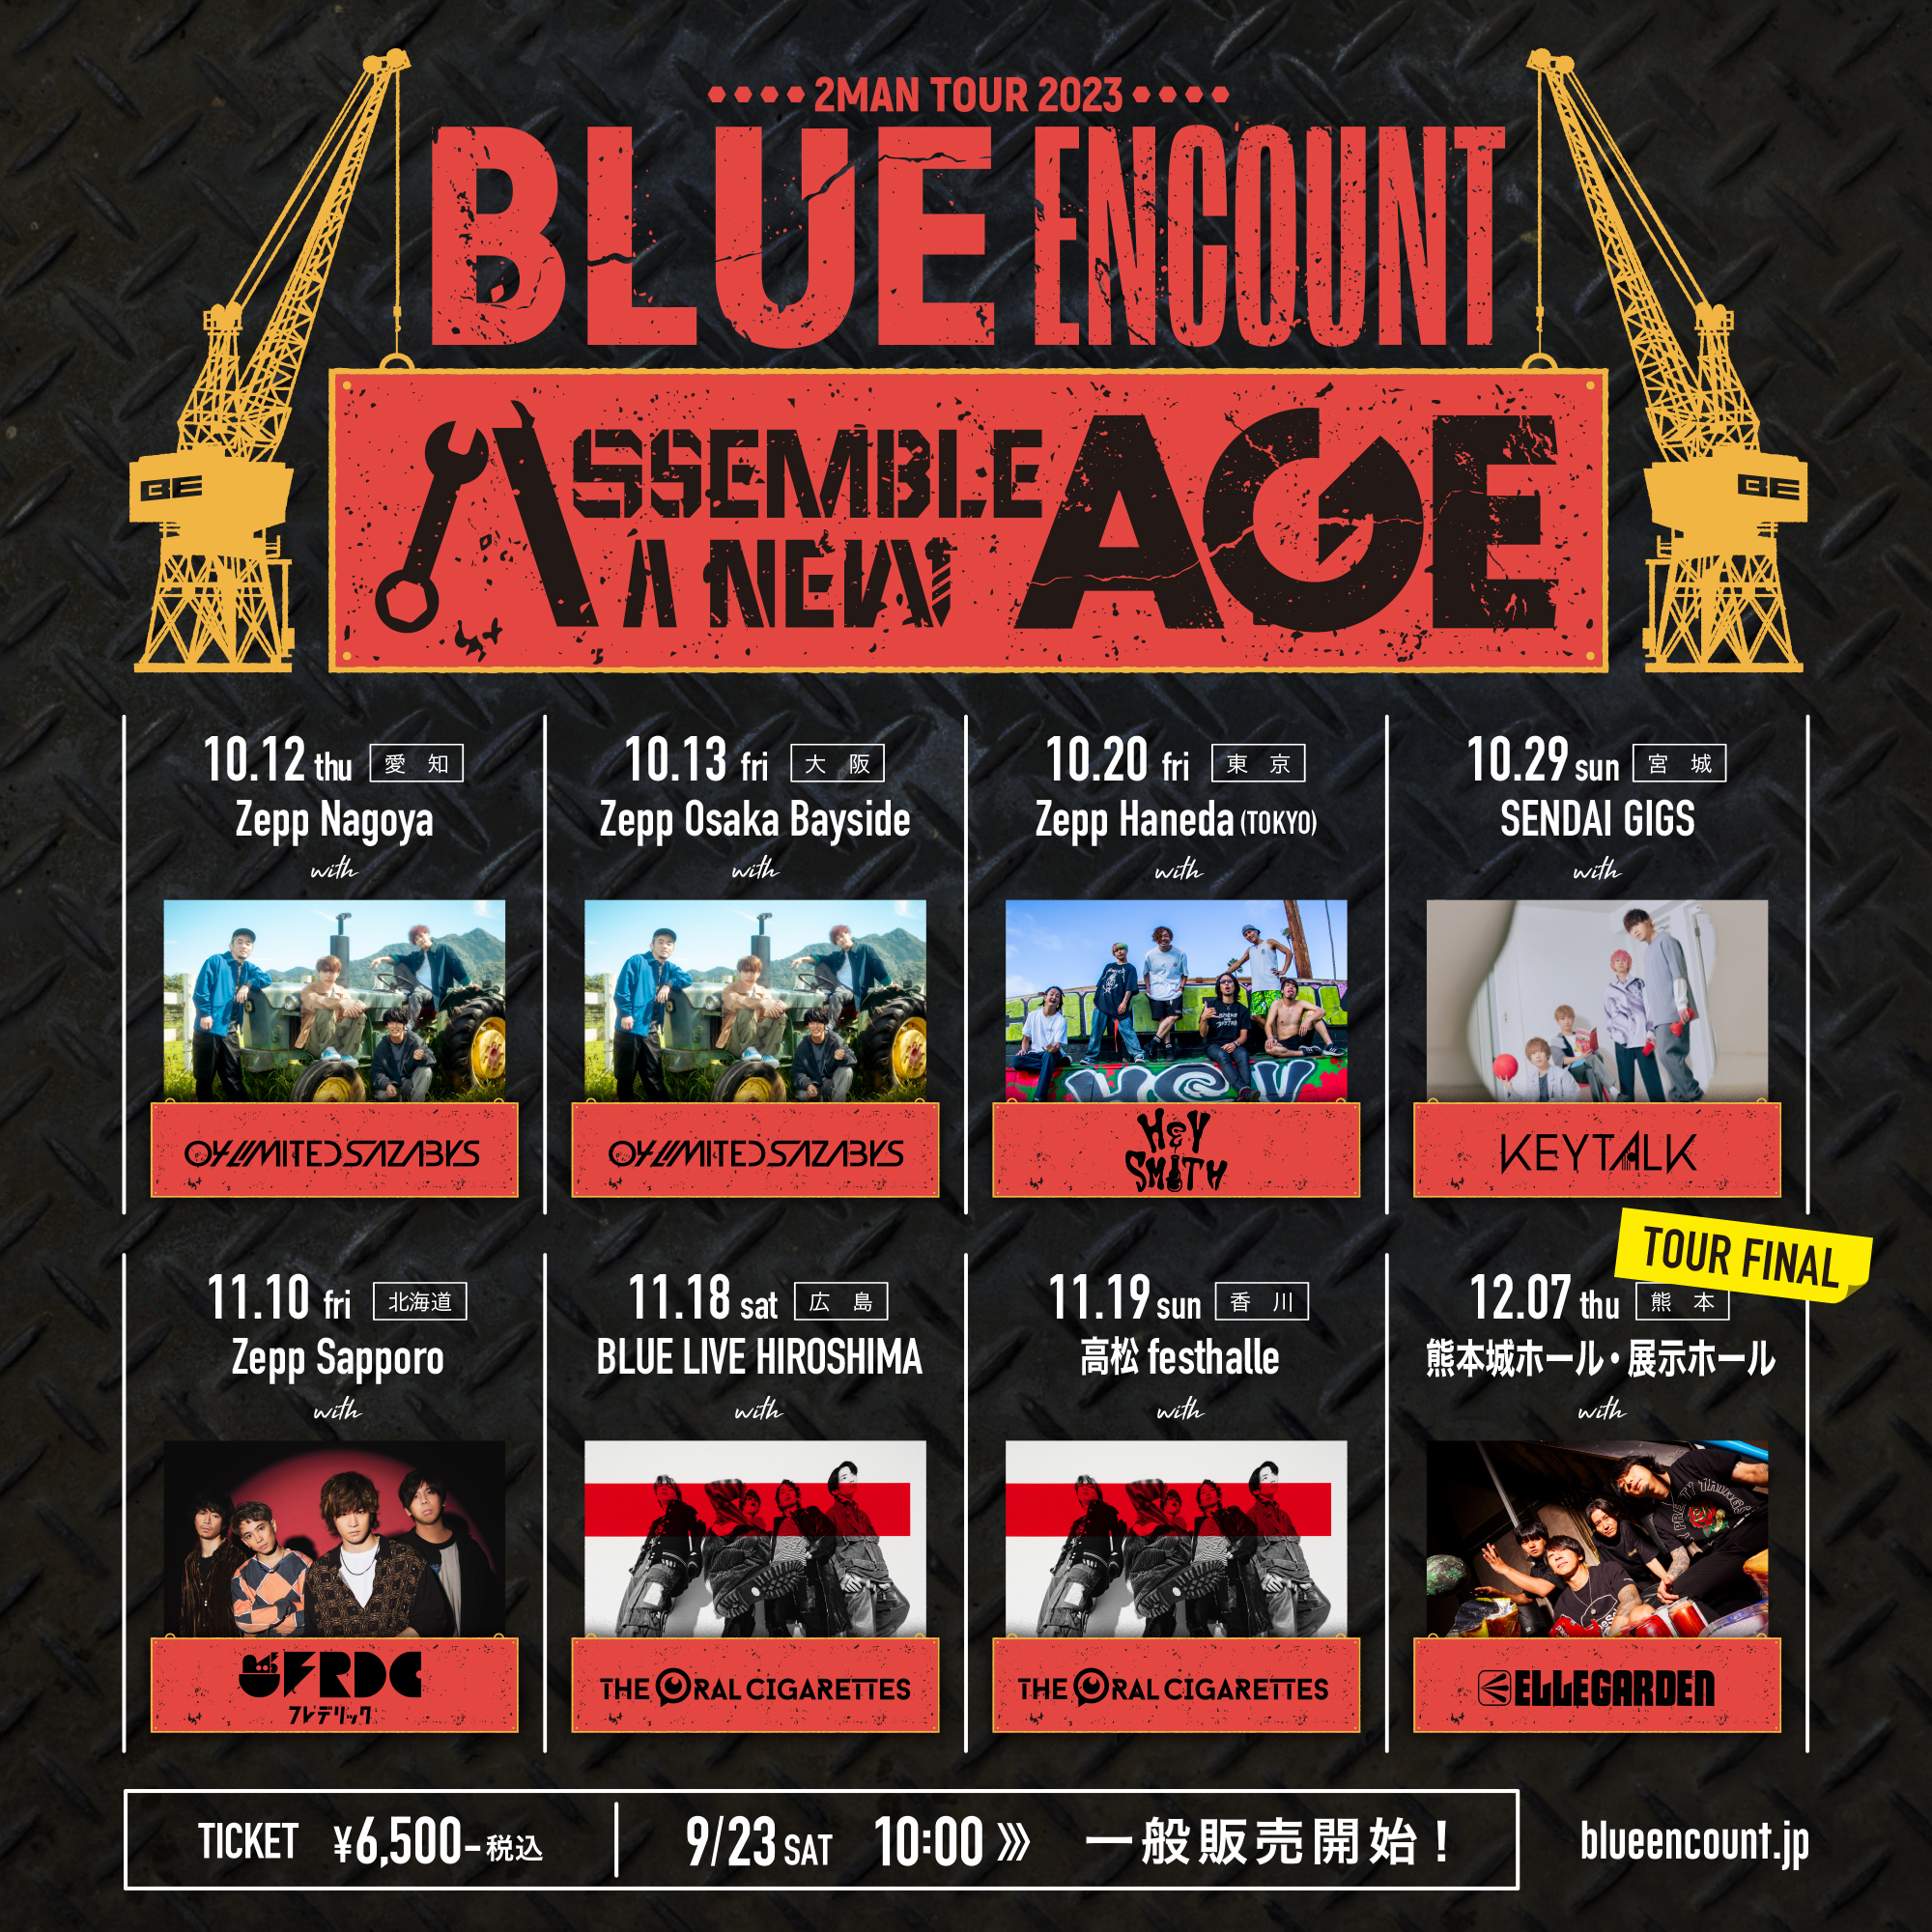 【大阪】BLUE ENCOUNT 2MAN TOUR 2023 "ASSEMBLE A NEW AGE" (Zepp Osaka Bayside)